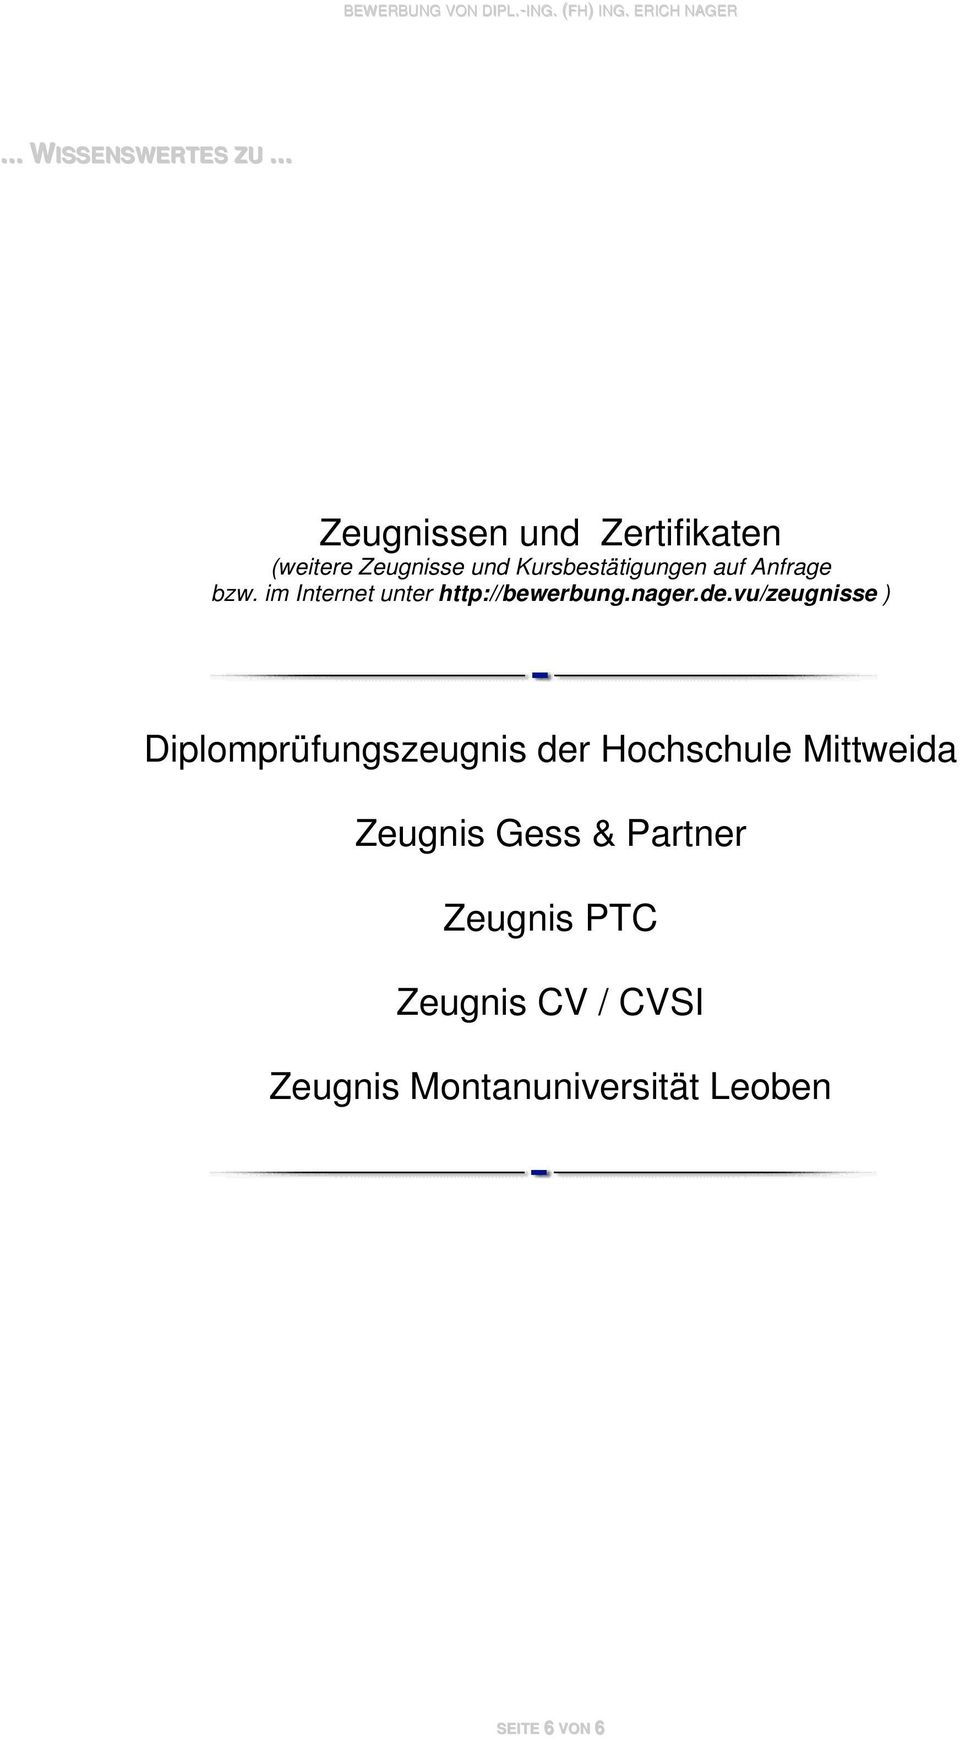 vu/zeugnisse ) Diplomprüfungszeugnis der Hochschule Mittweida Zeugnis